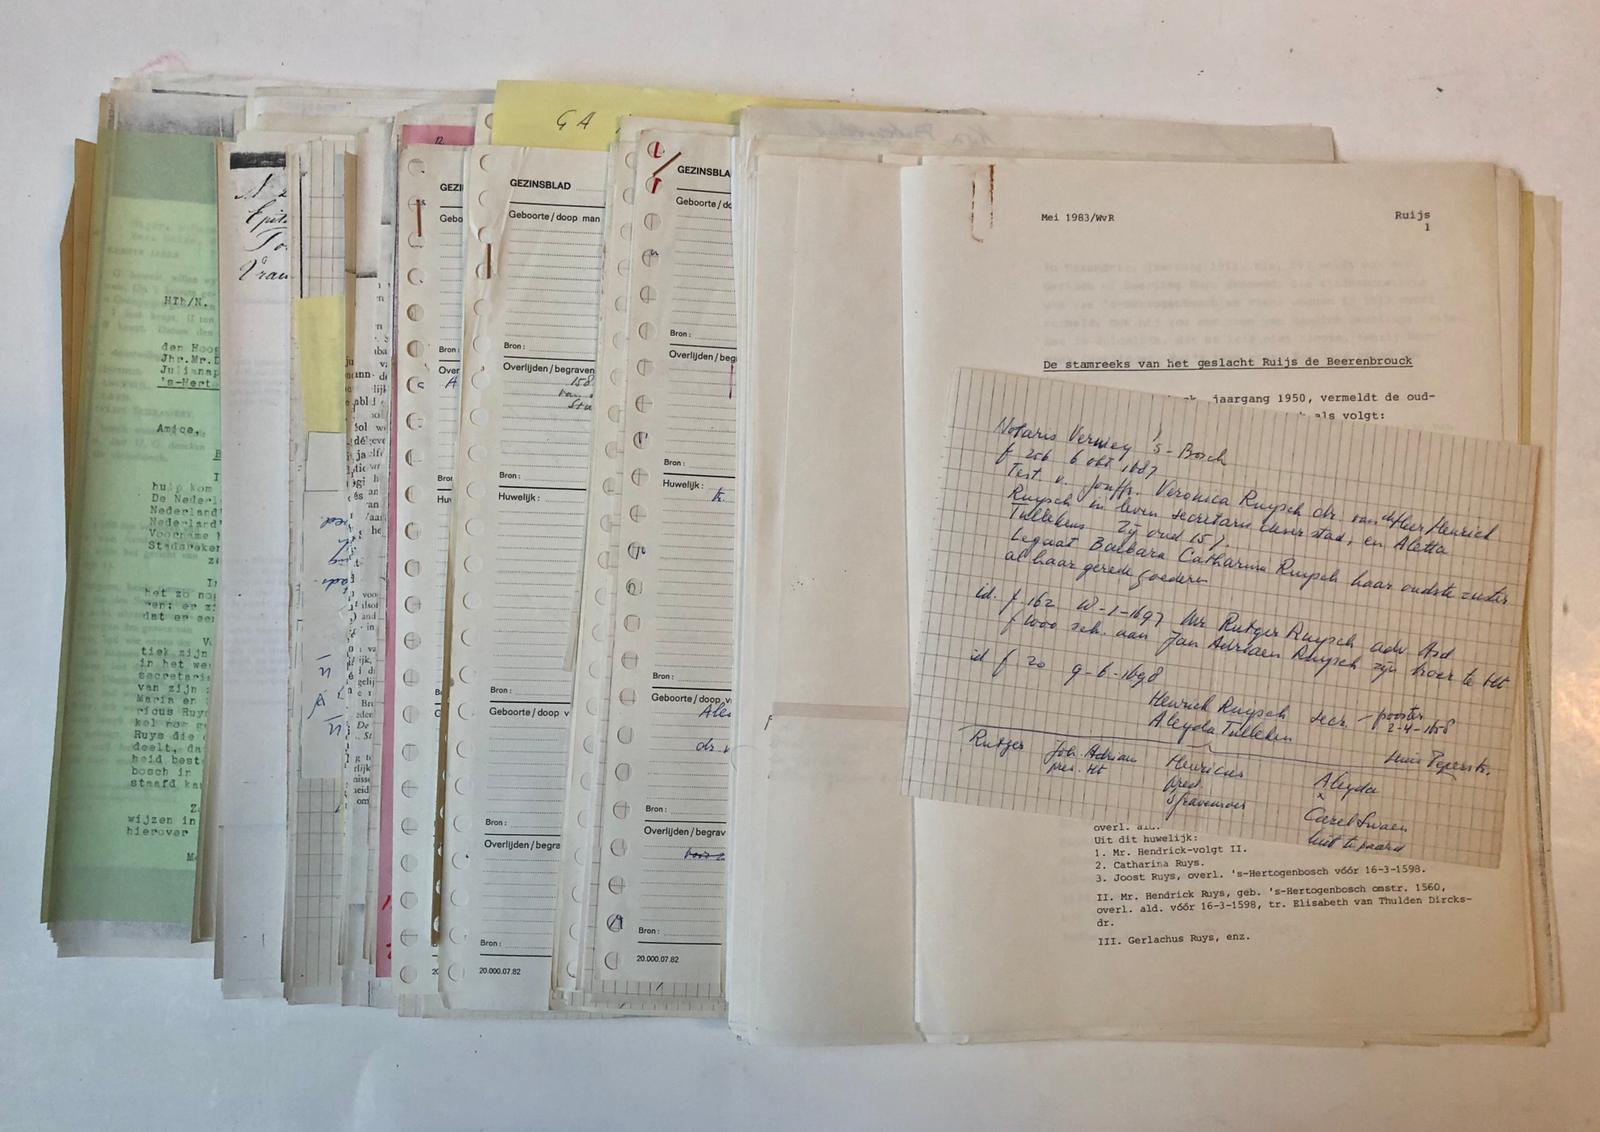  - [Genealogy] RUIJS (DE BEERENBROUCK).- Dossier betr. het rapport `De stamreeks van het geslacht Ruijs de Beerenbrouck' door W. Wijnaendts van Resandt, 1983.